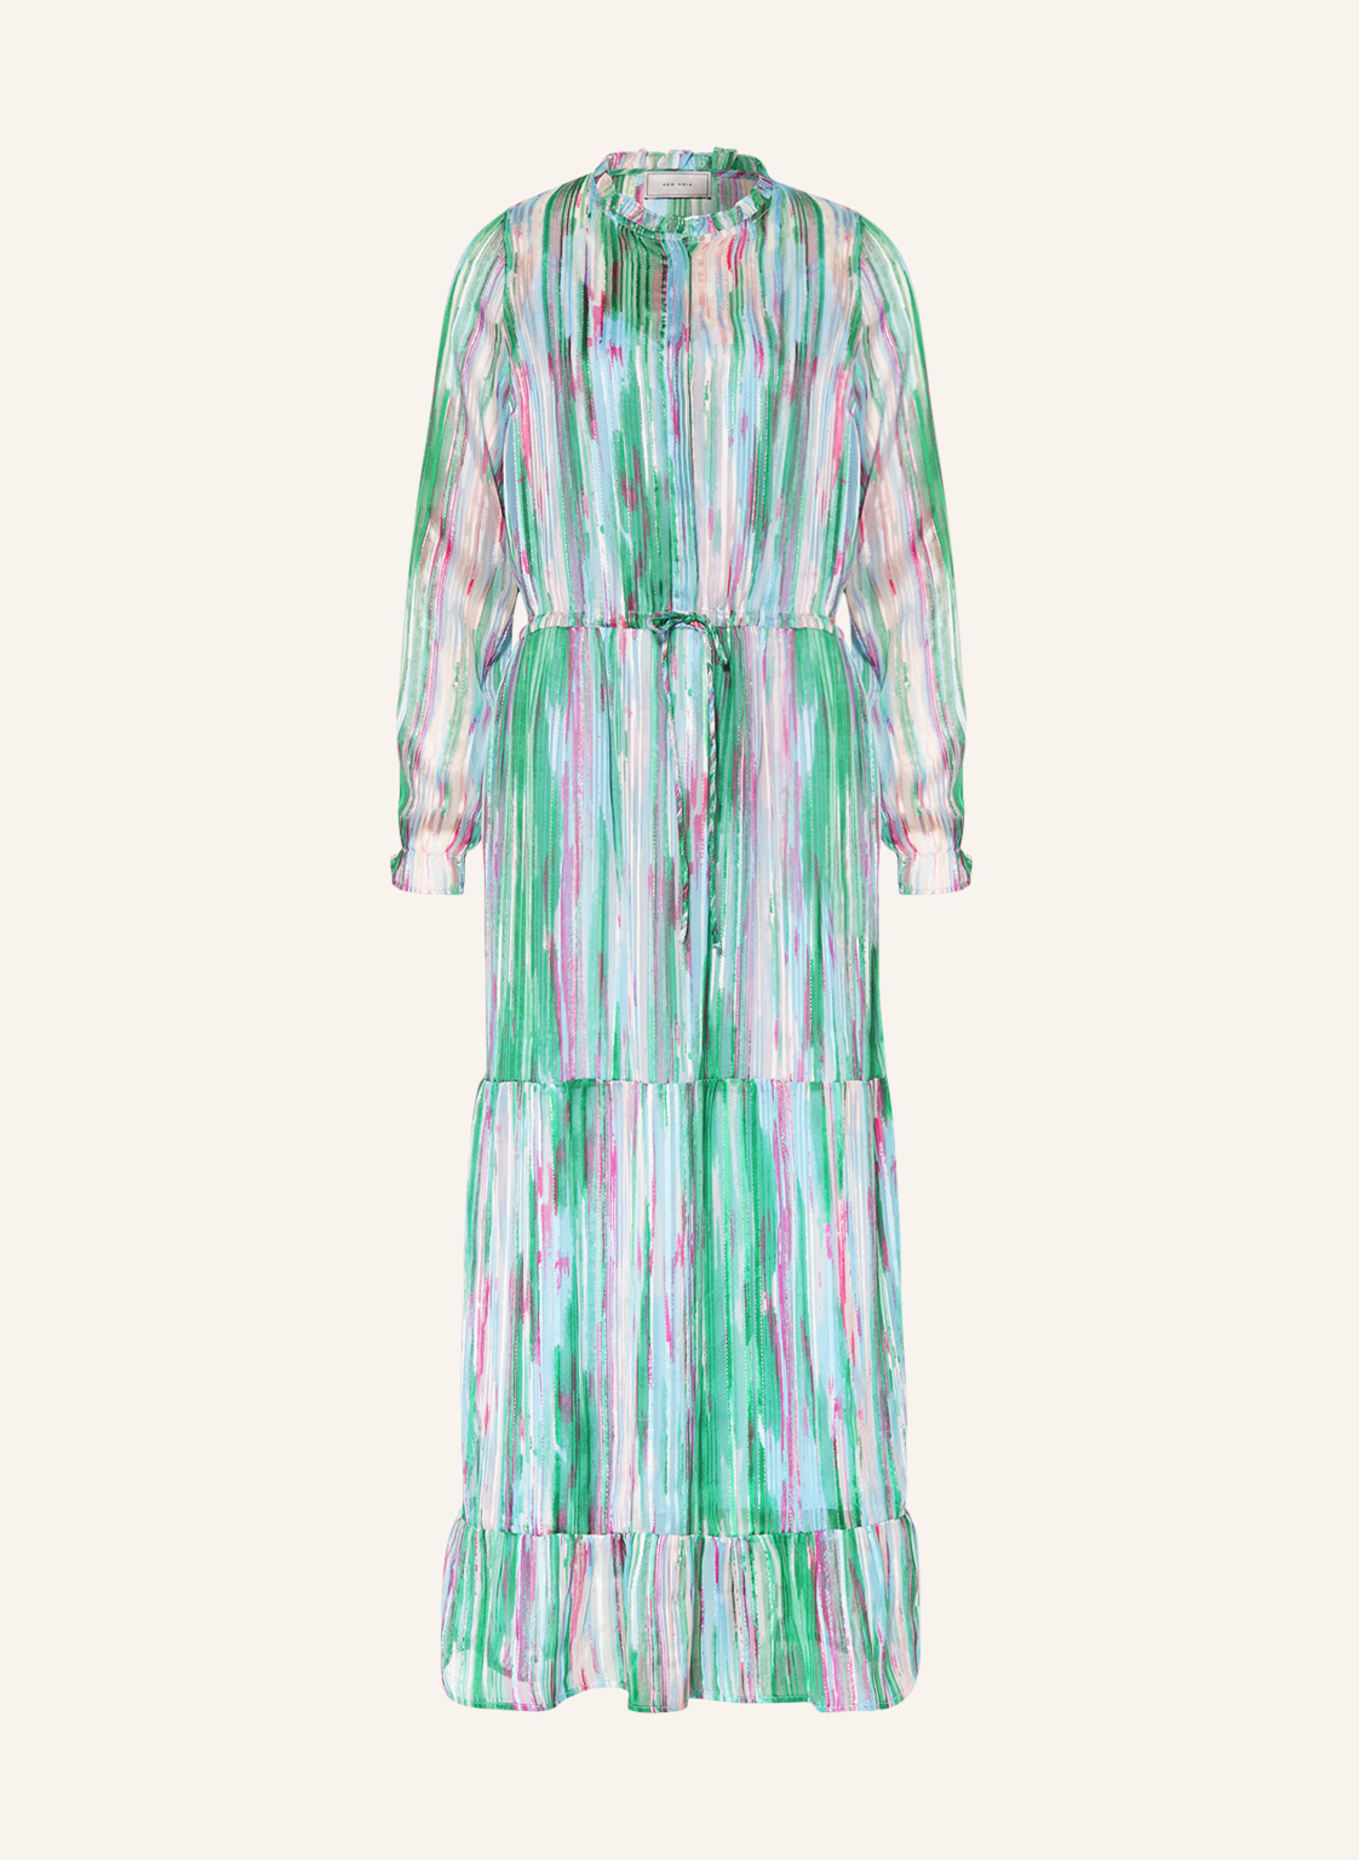 NEO NOIR Kleid SILO mit Glitzergarn und Volants, Farbe: GRÜN/ HELLBLAU/ PINK (Bild 1)